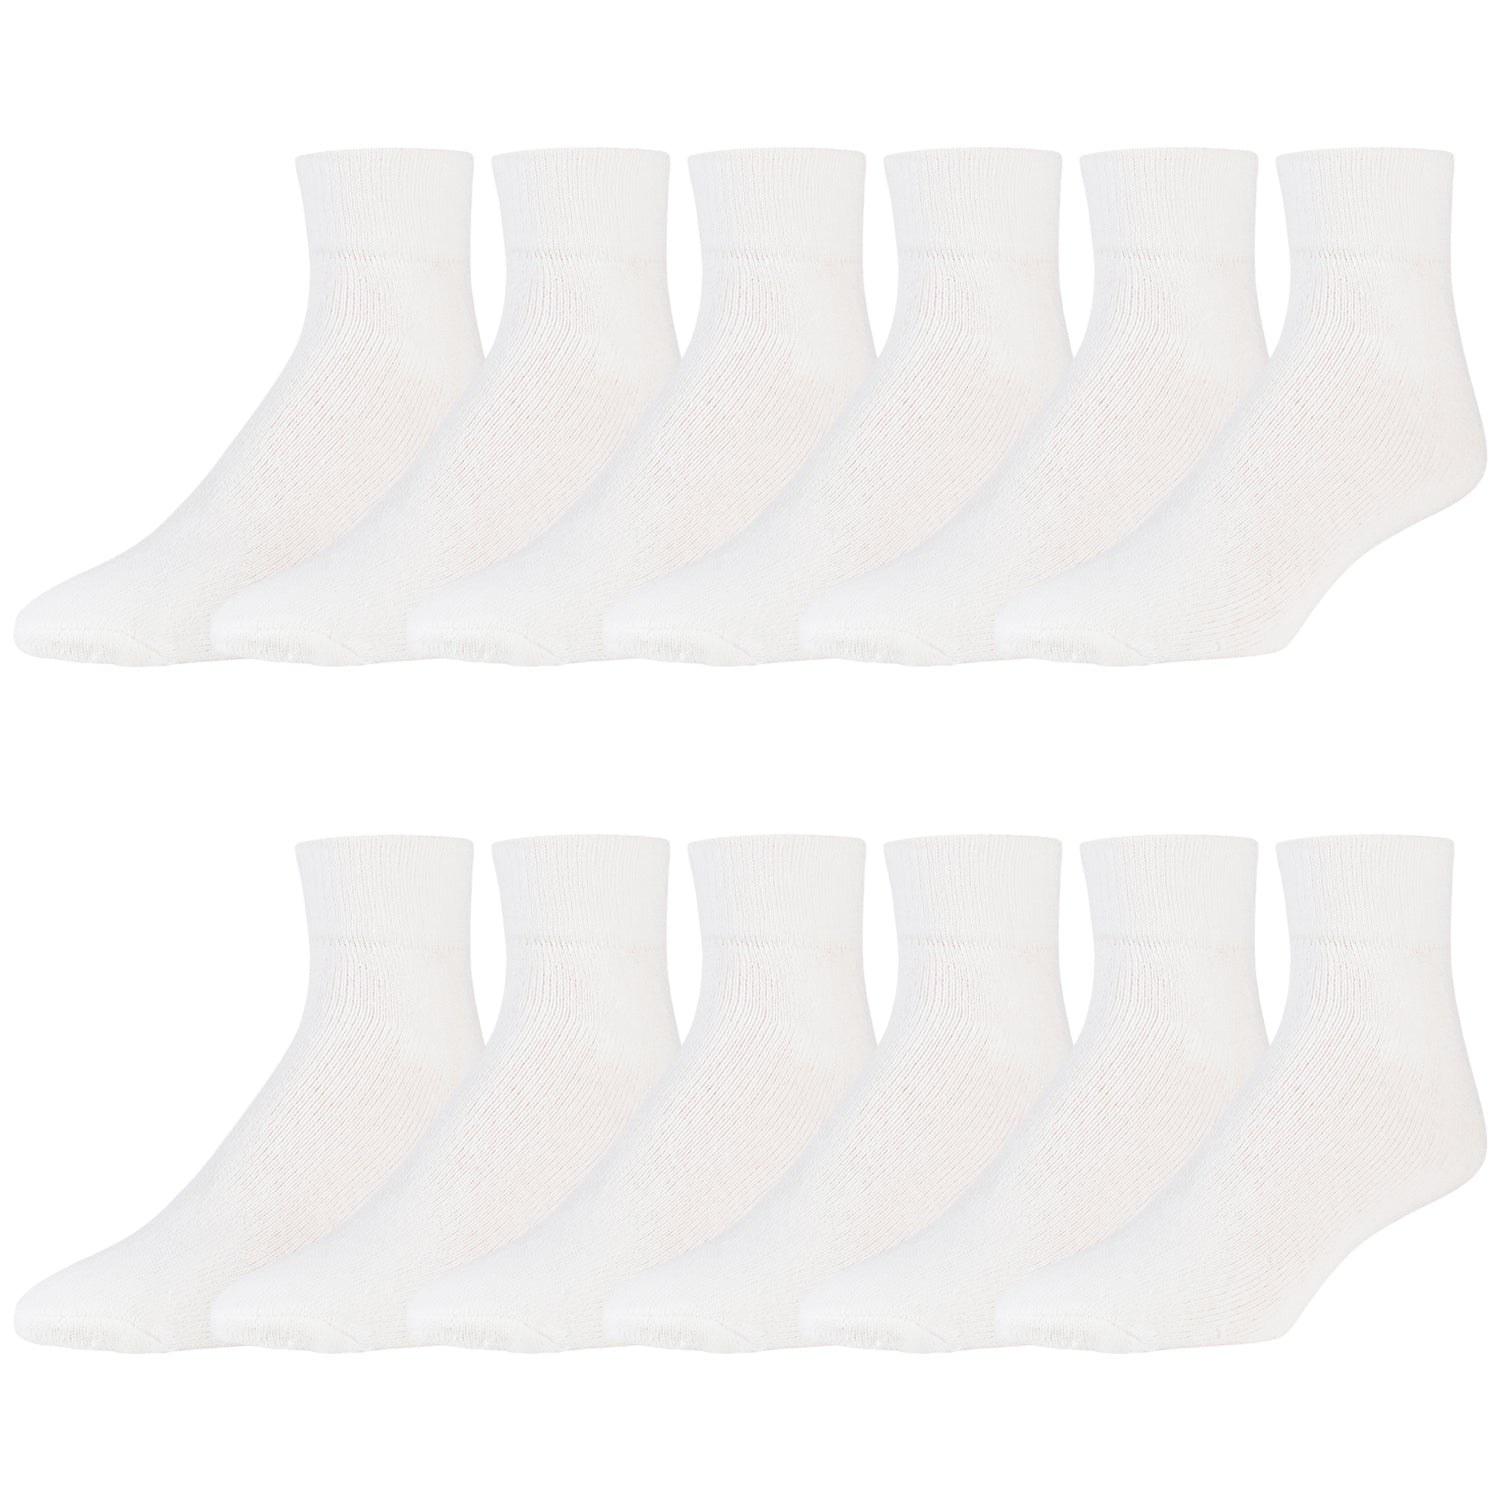 Women's Quarter Length Sports Socks, Size 9-11